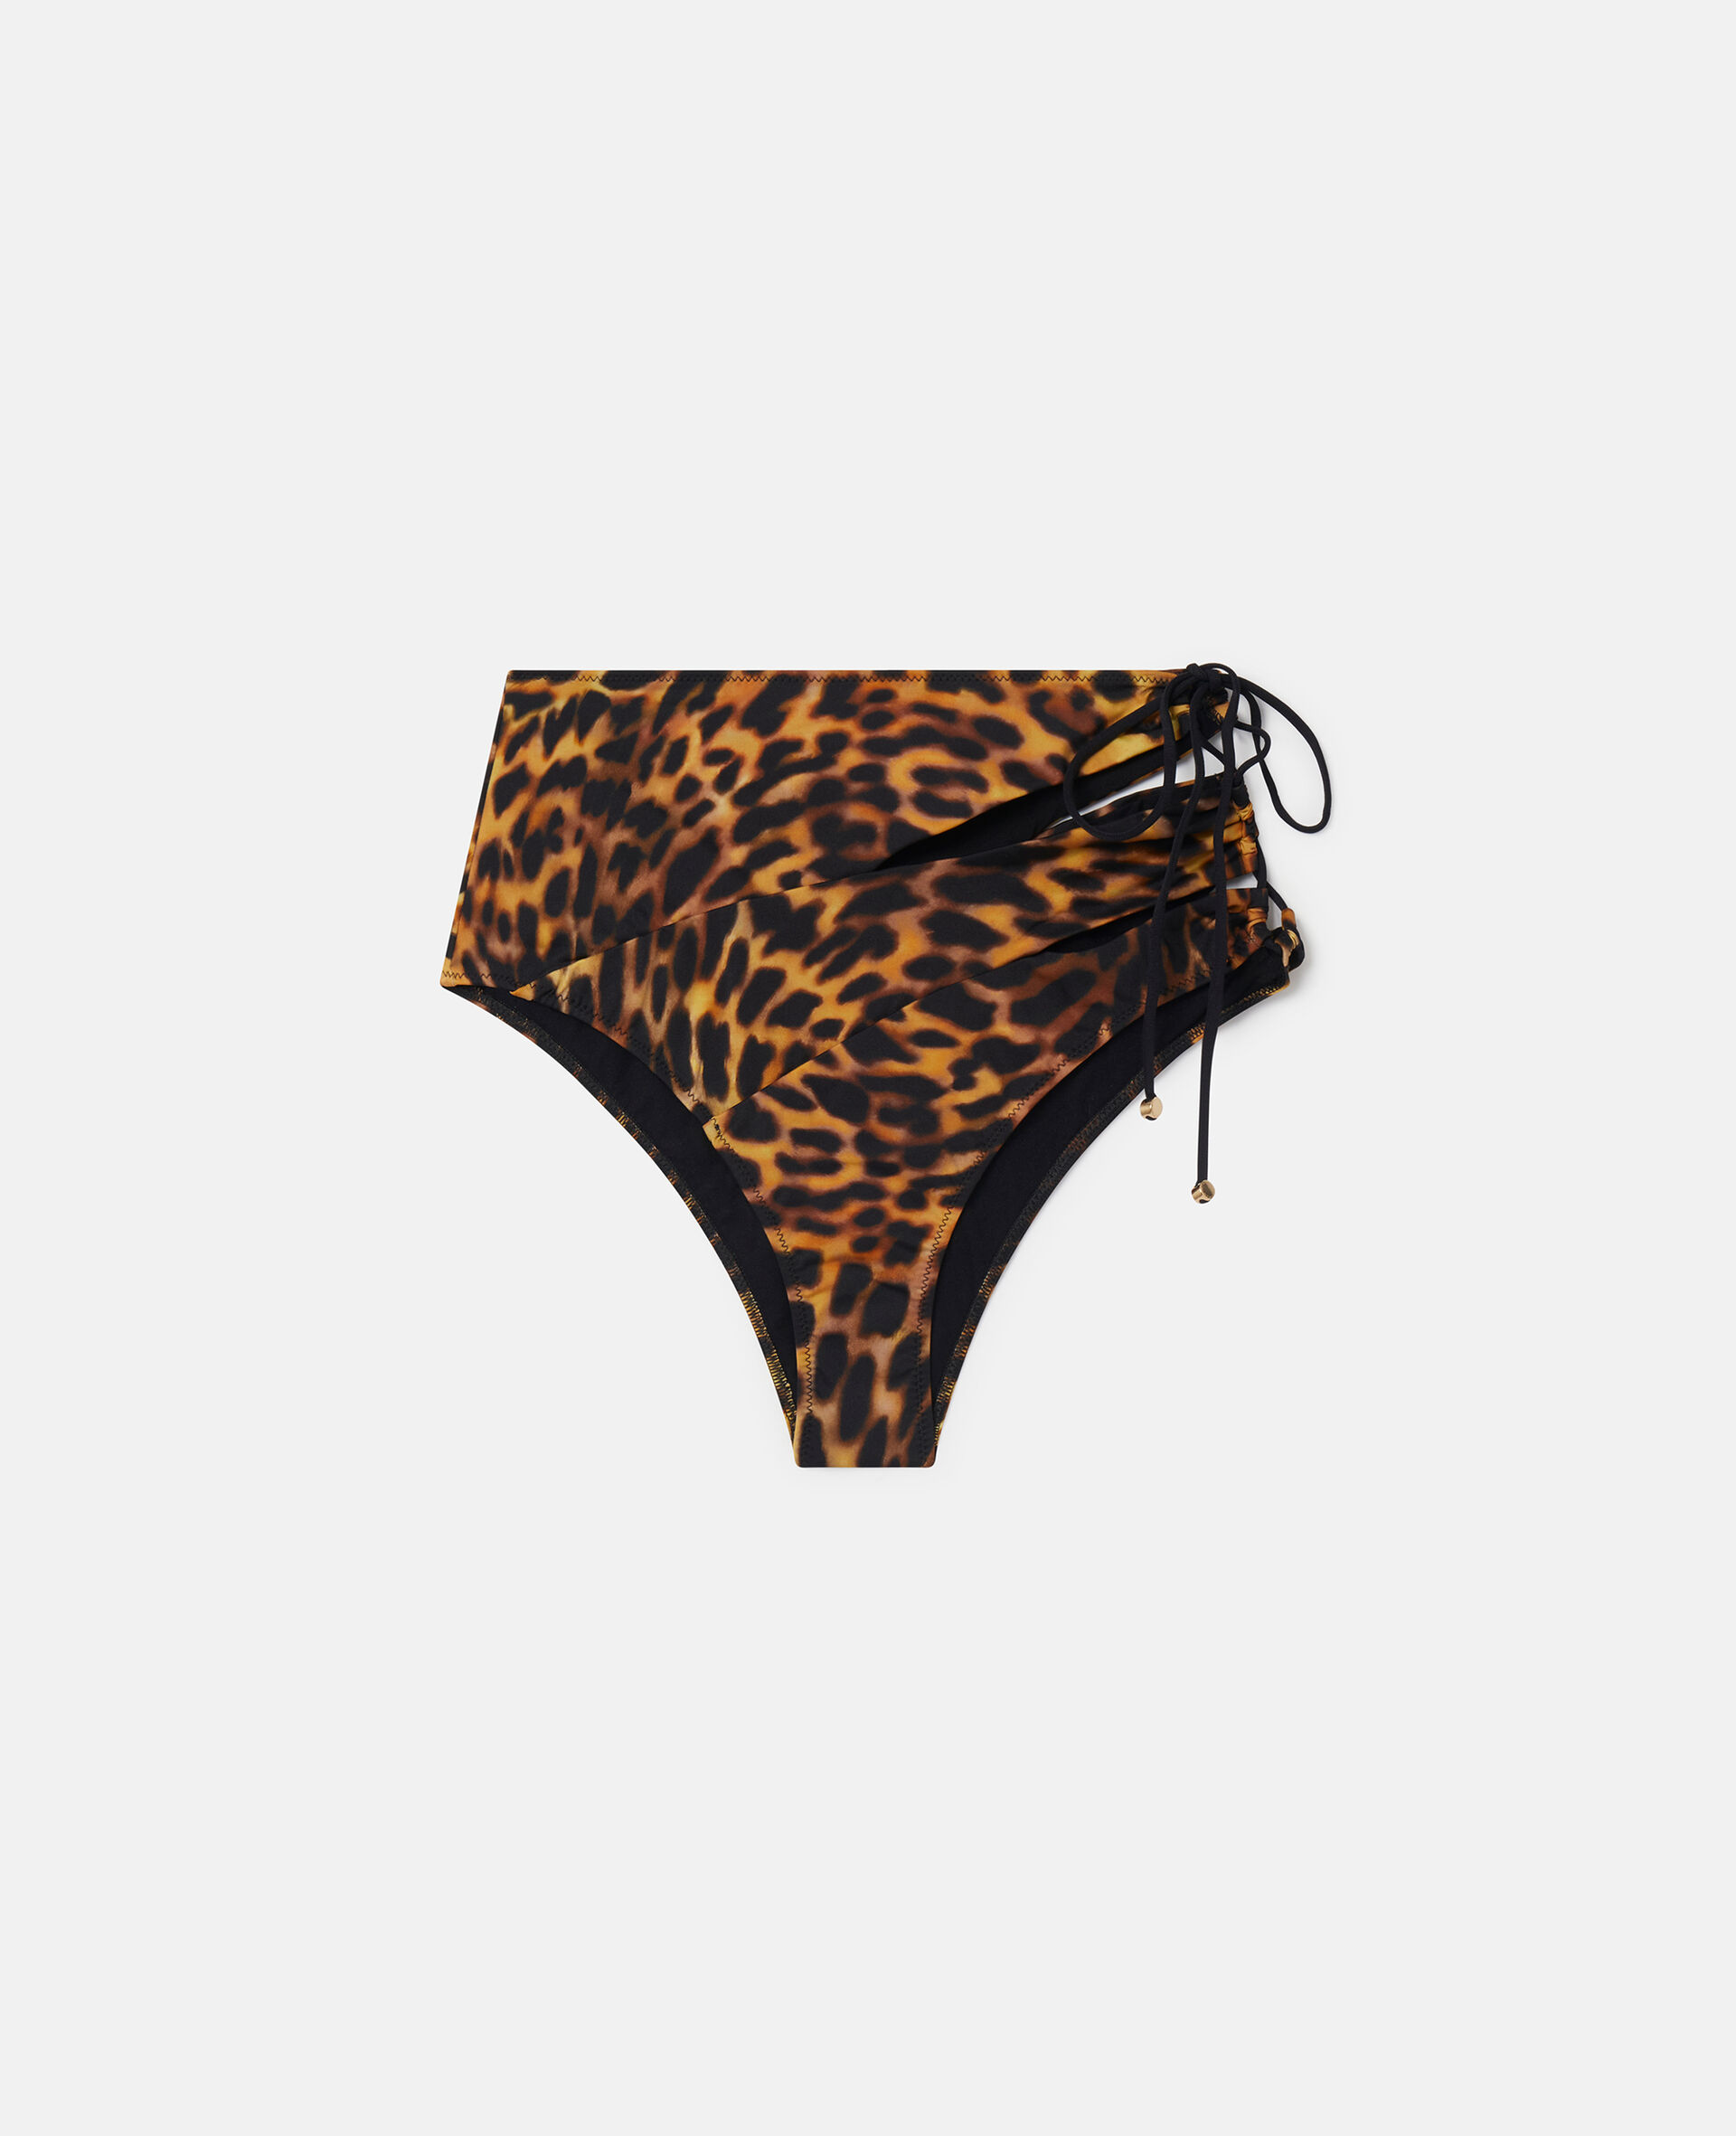 Bikinihose mit Gepardenmuster und hoher Taille-Bunt-medium